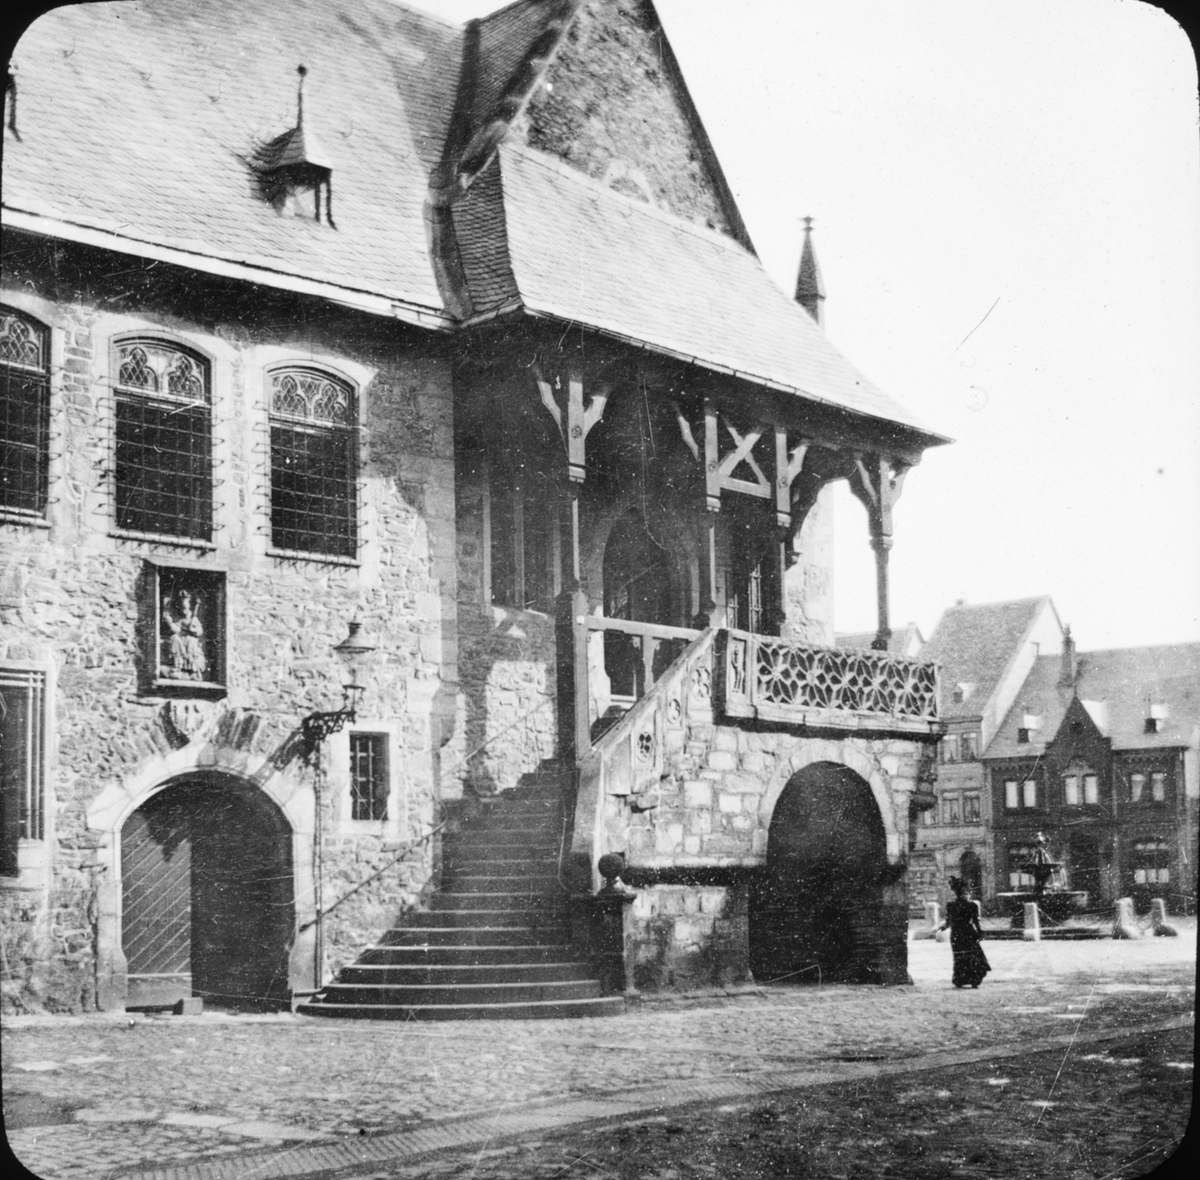 Skioptikonbild med motiv av rådhuset vid torget i Goslar.
Bilden har förvarats i kartong märkt: Resan 1907. Gosslar 8. Text på bild: "Das Rathhaus".